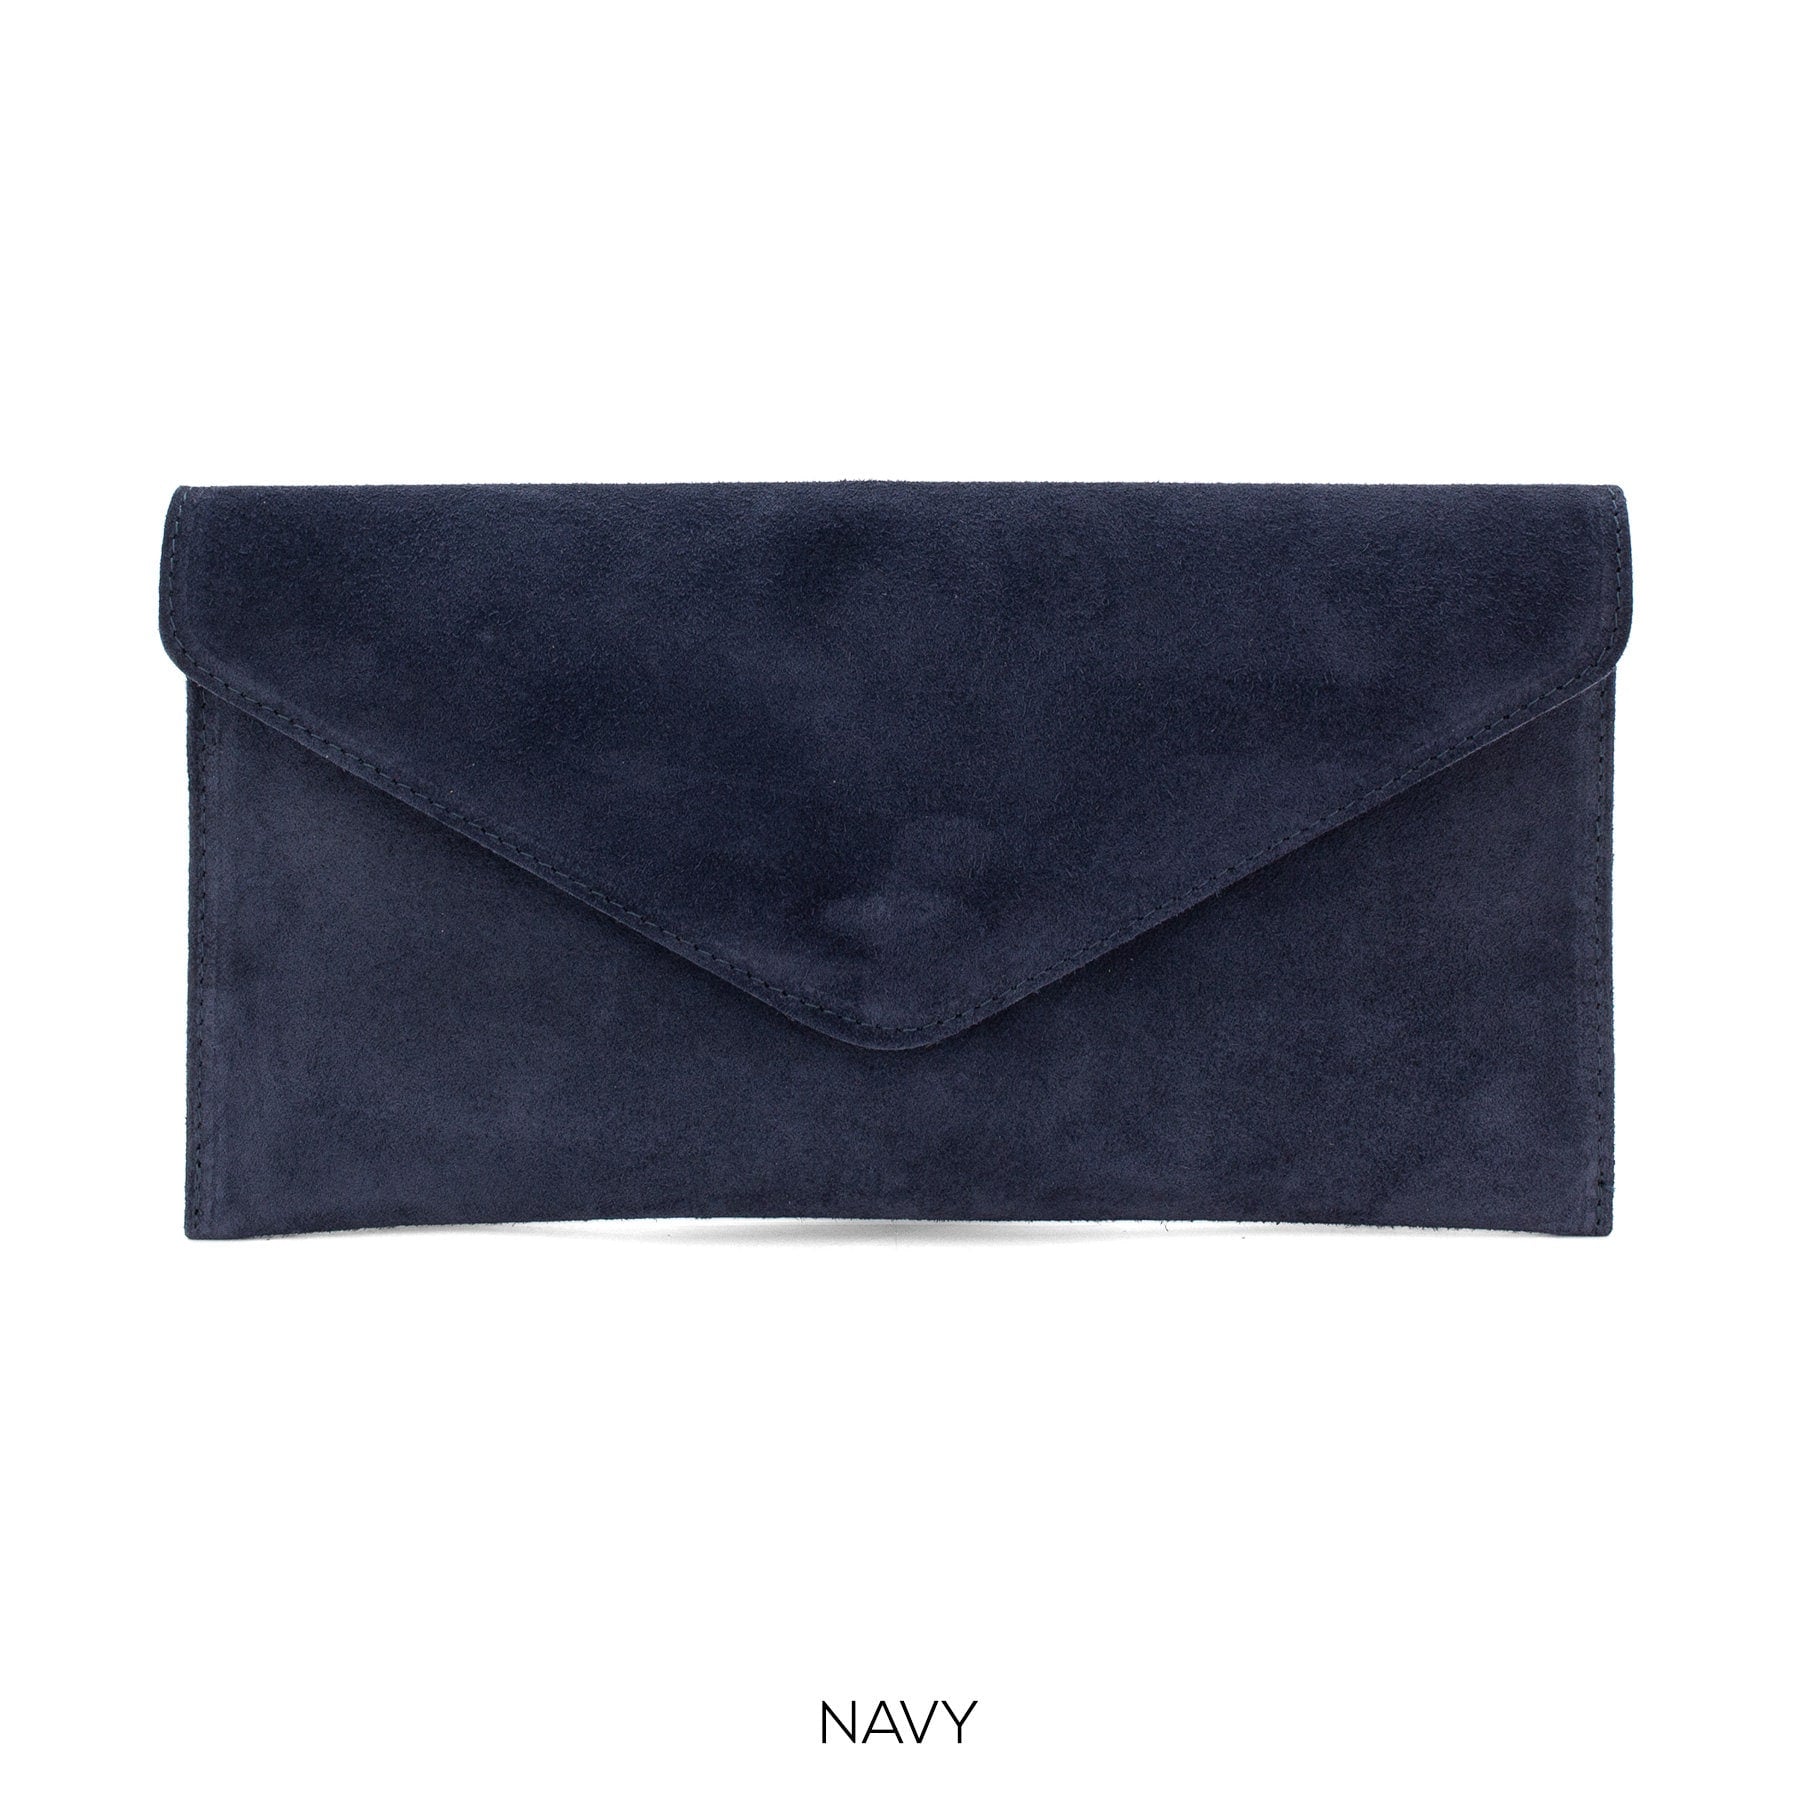 Navy Blue envelope clutch bag